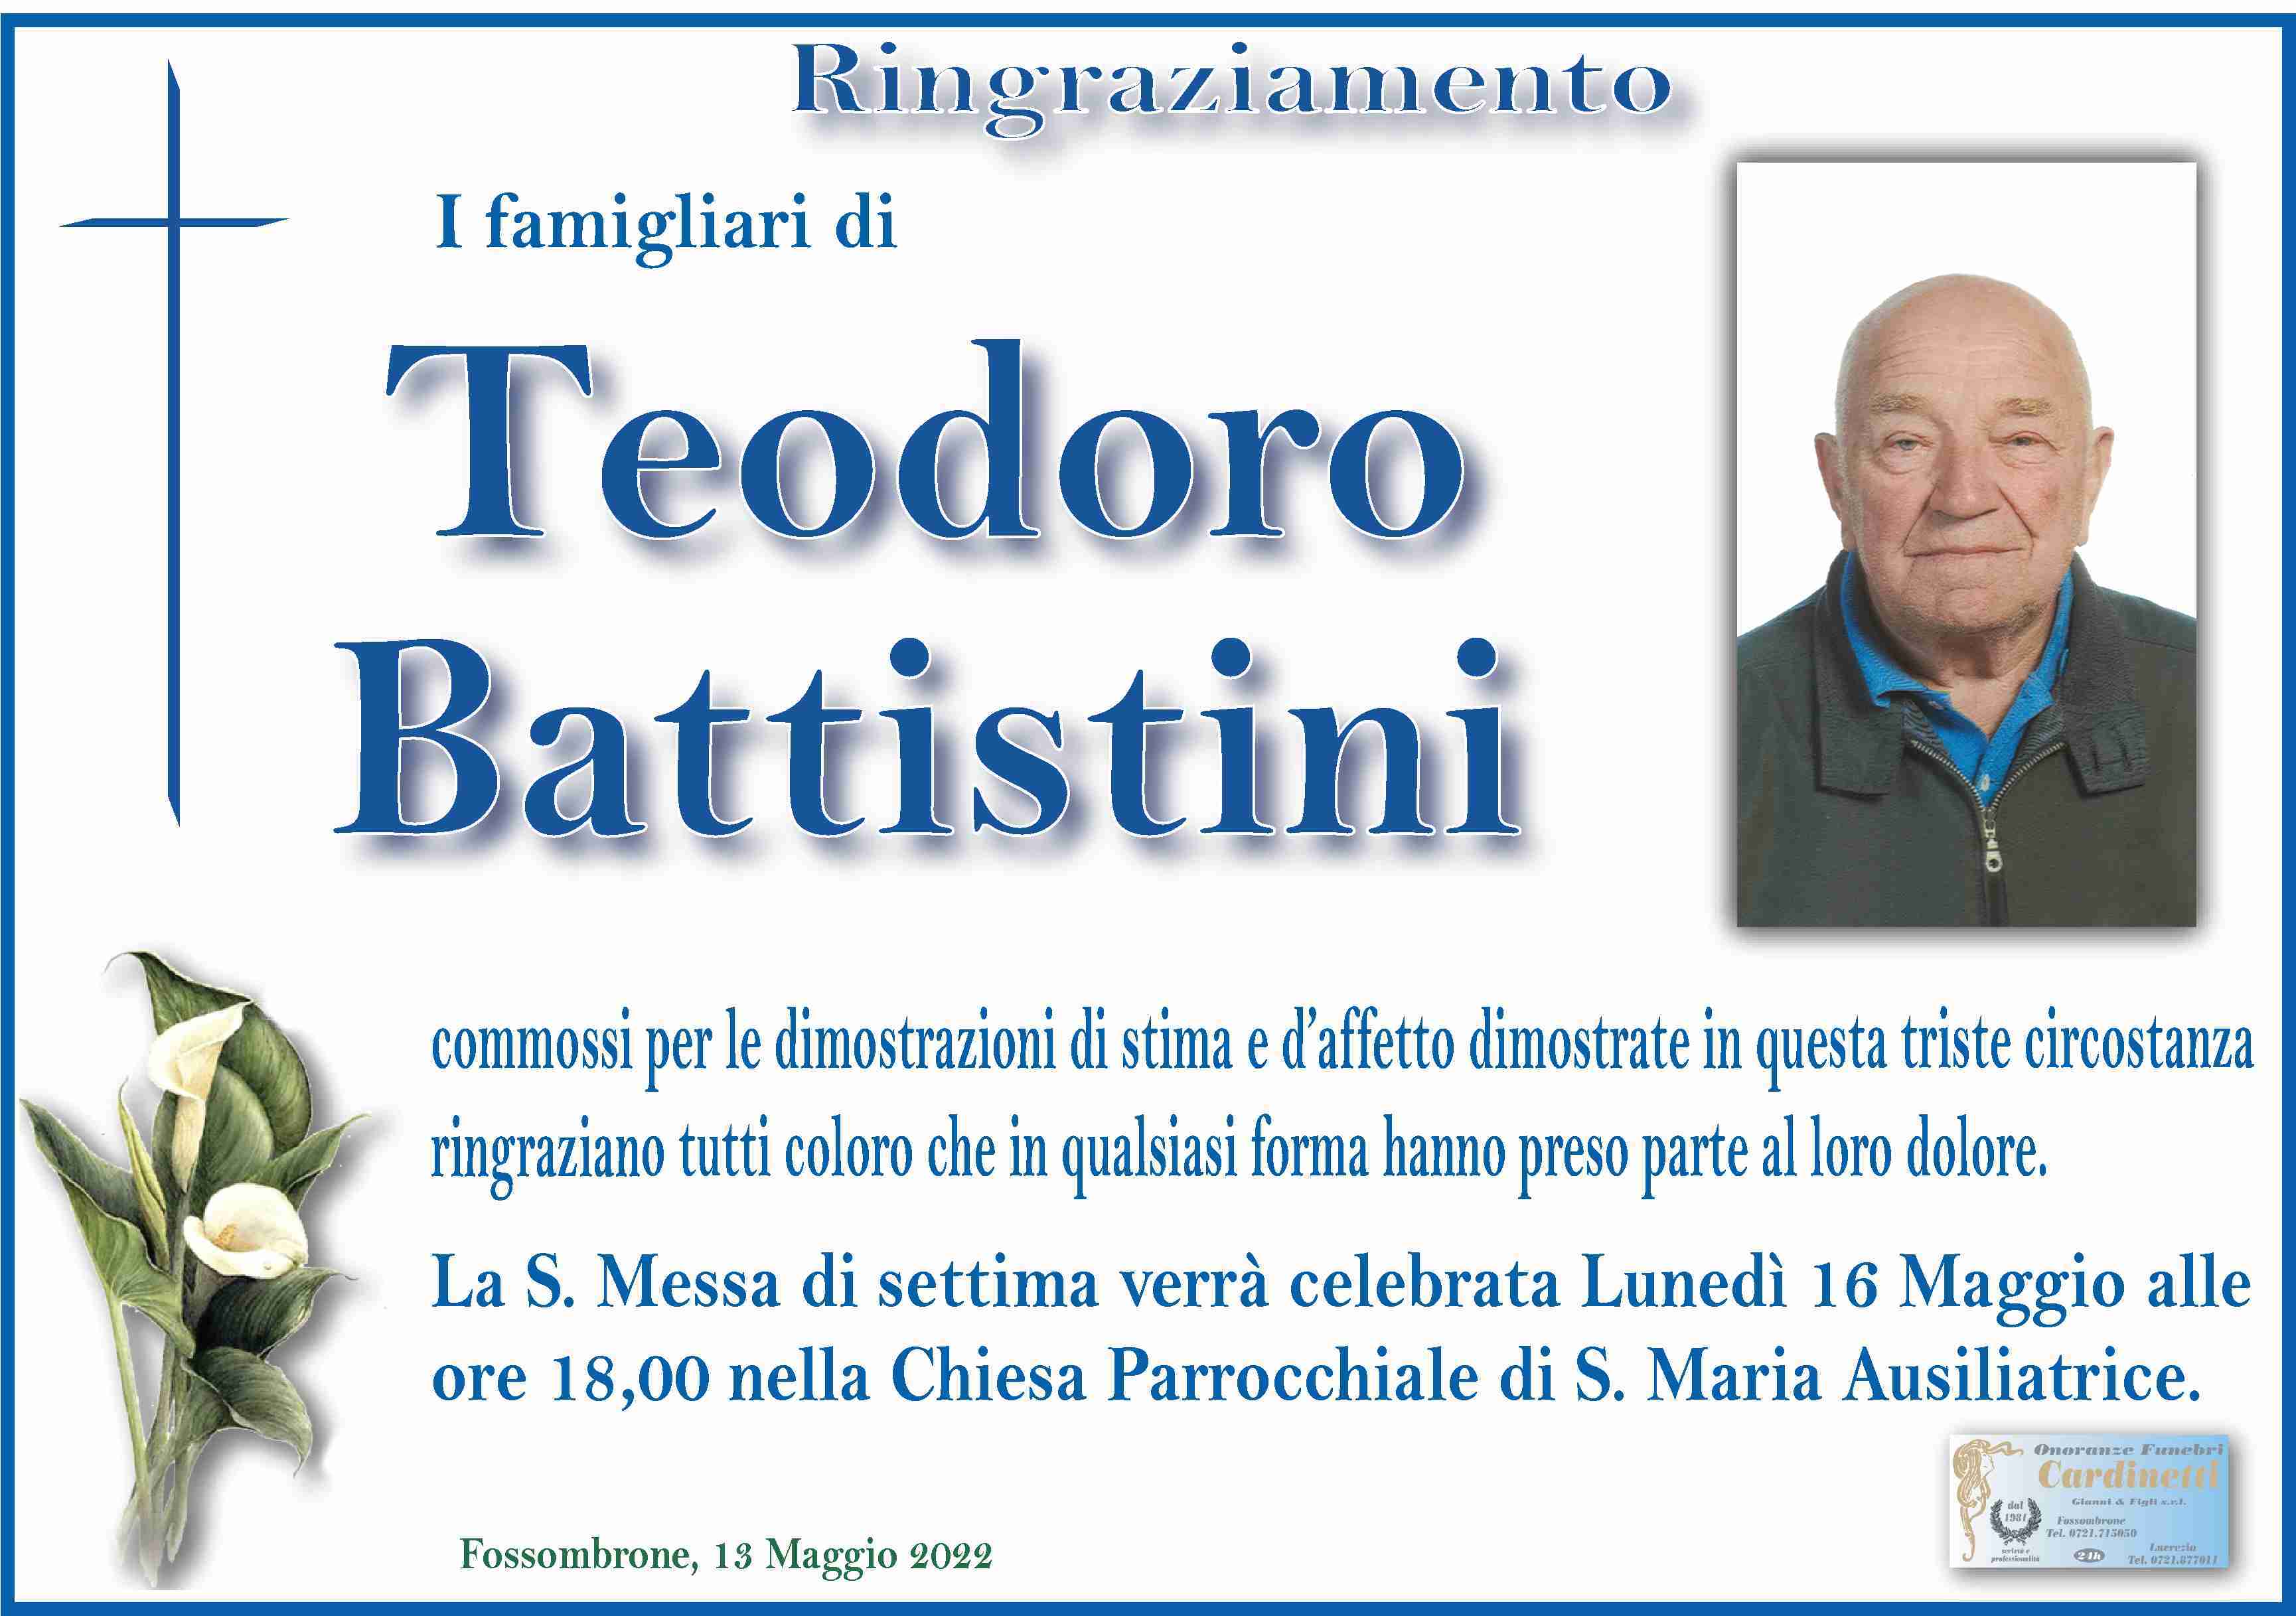 Teodoro Battistini